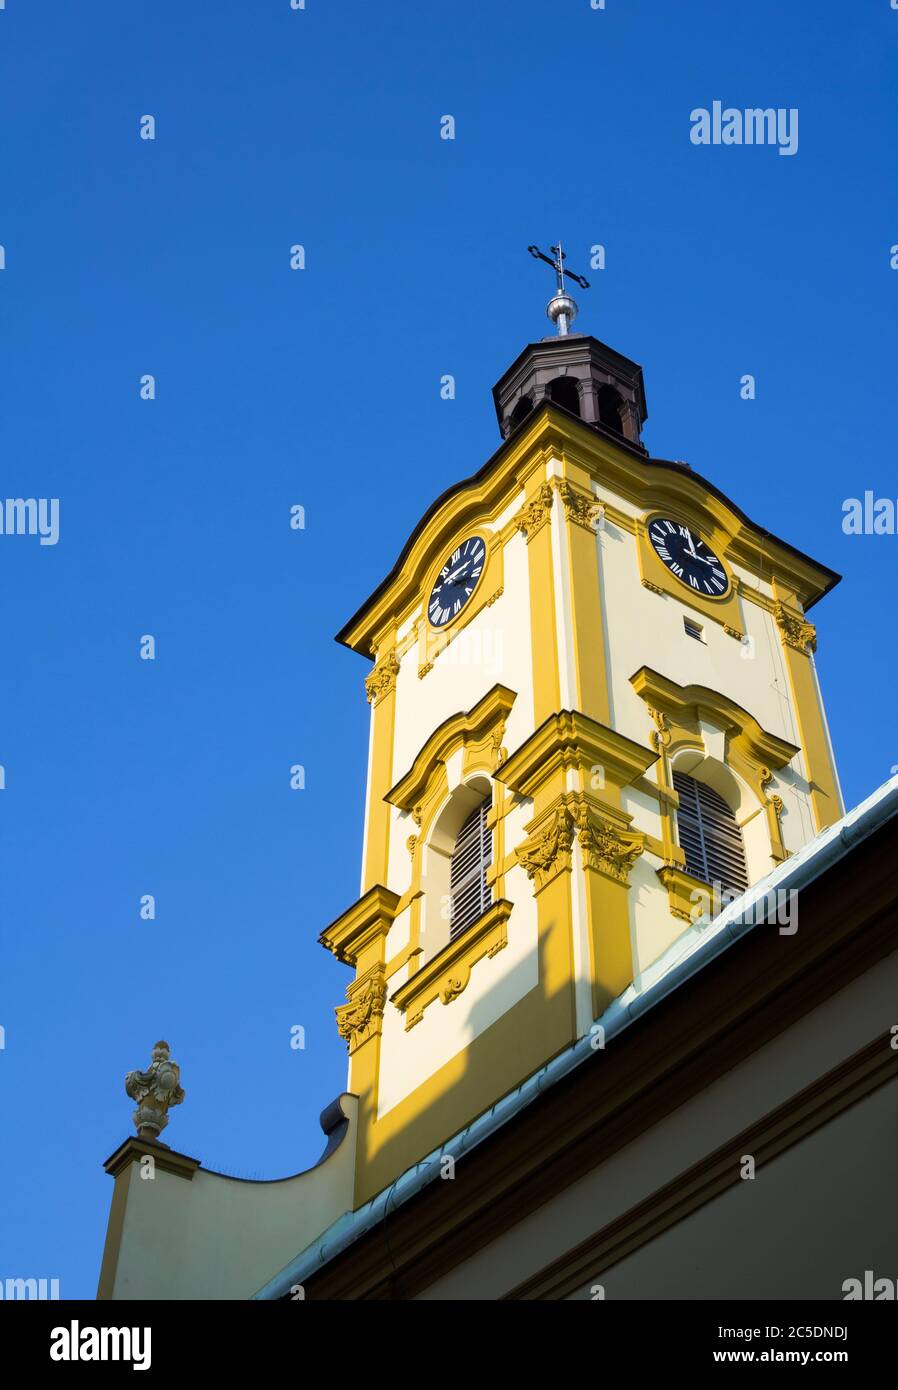 Église de Sainte-Croix ( Kosciol Swietego Krzyza ), Cieszyn, Silésie, Pologne, Europe centrale - clocher jaune rénové de l'église baroque Banque D'Images